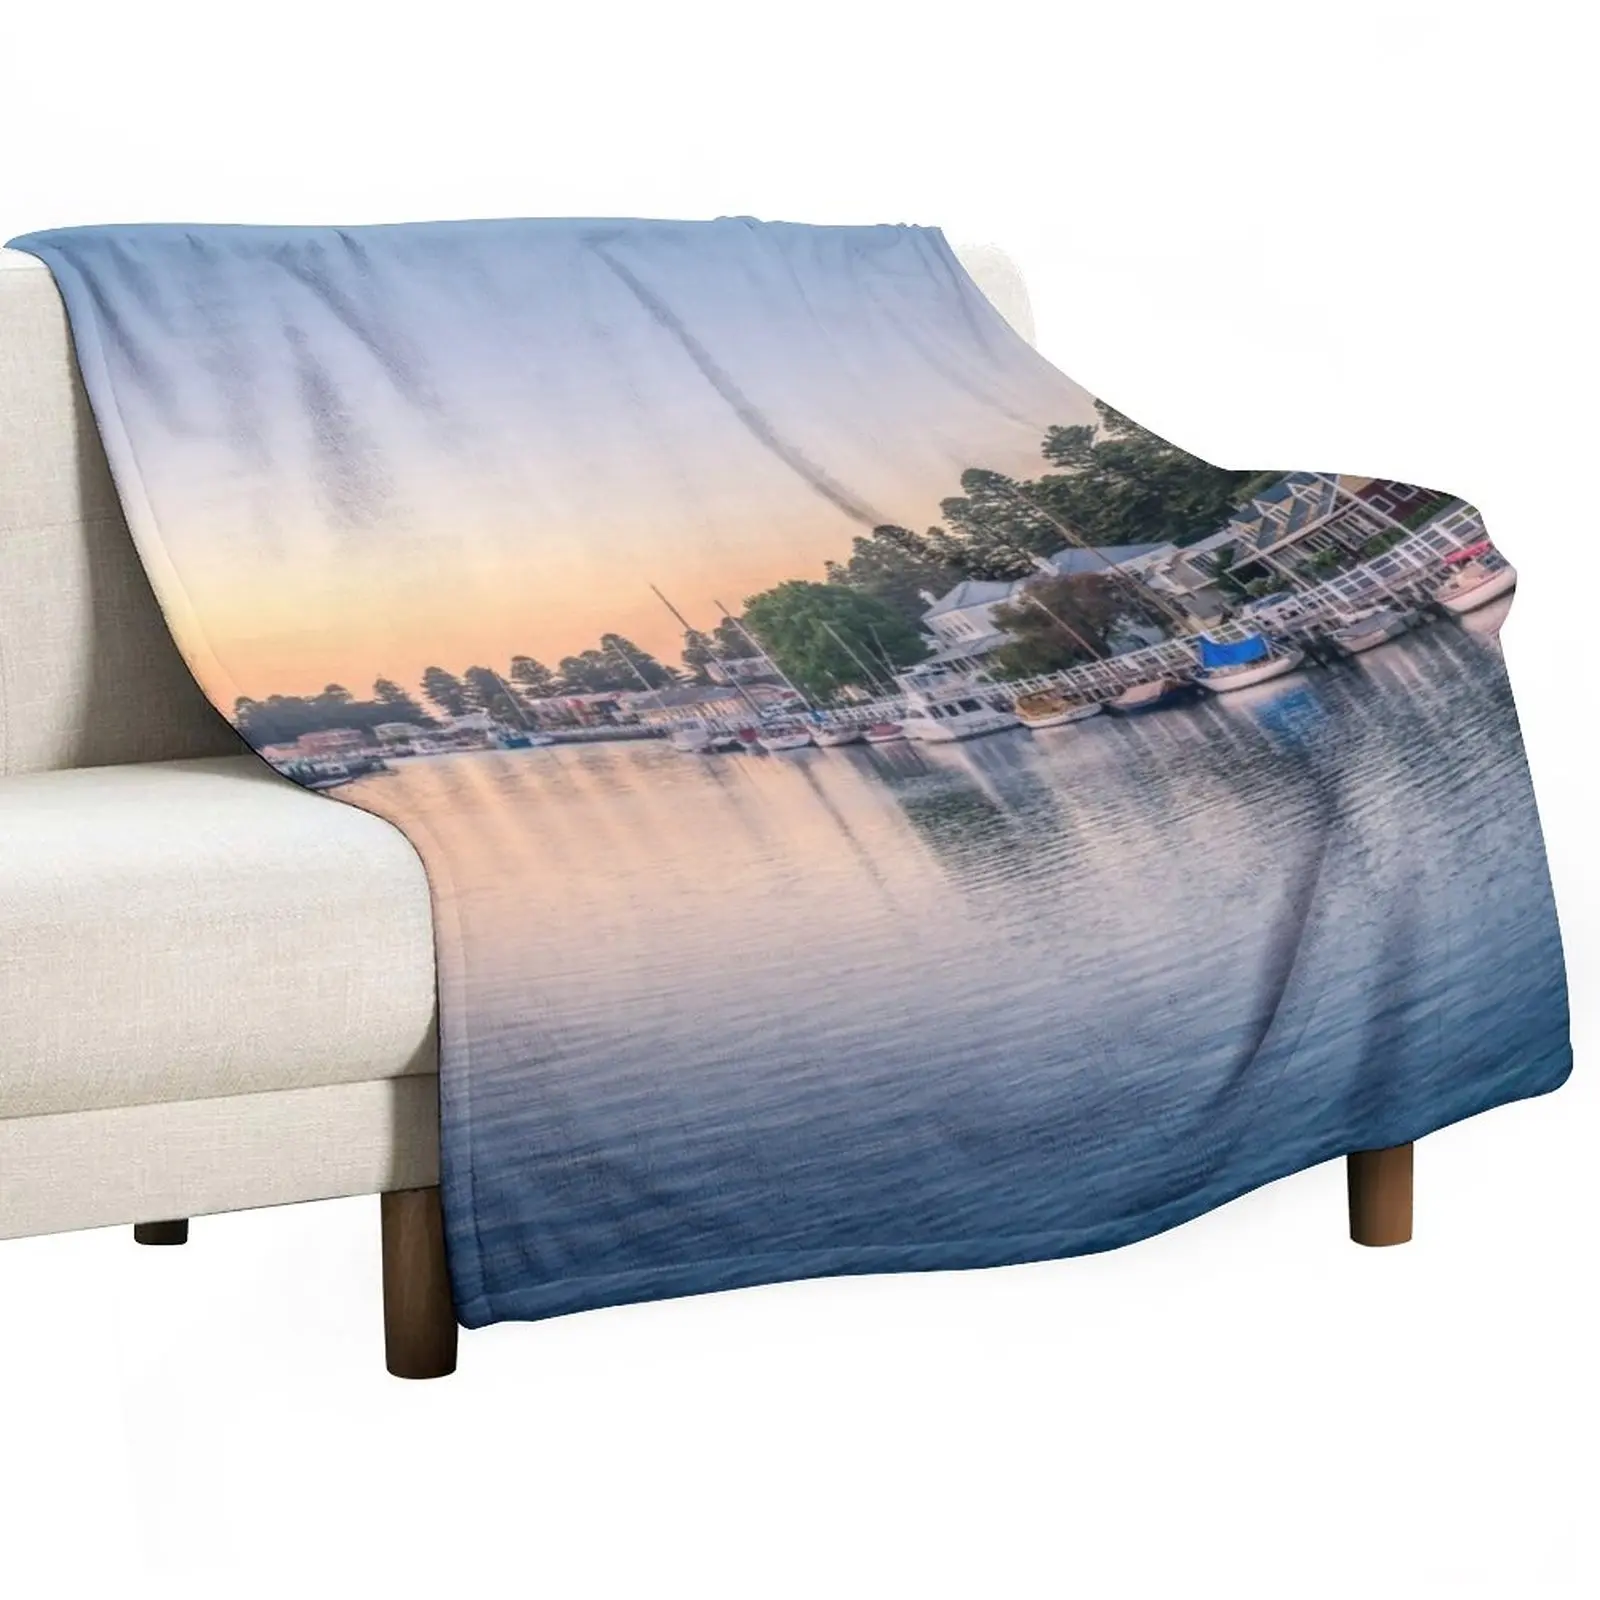 

Port Fairy Sunrise Throw Blanket Comforter Blanket Decorative Bed Blankets fluffy blanket